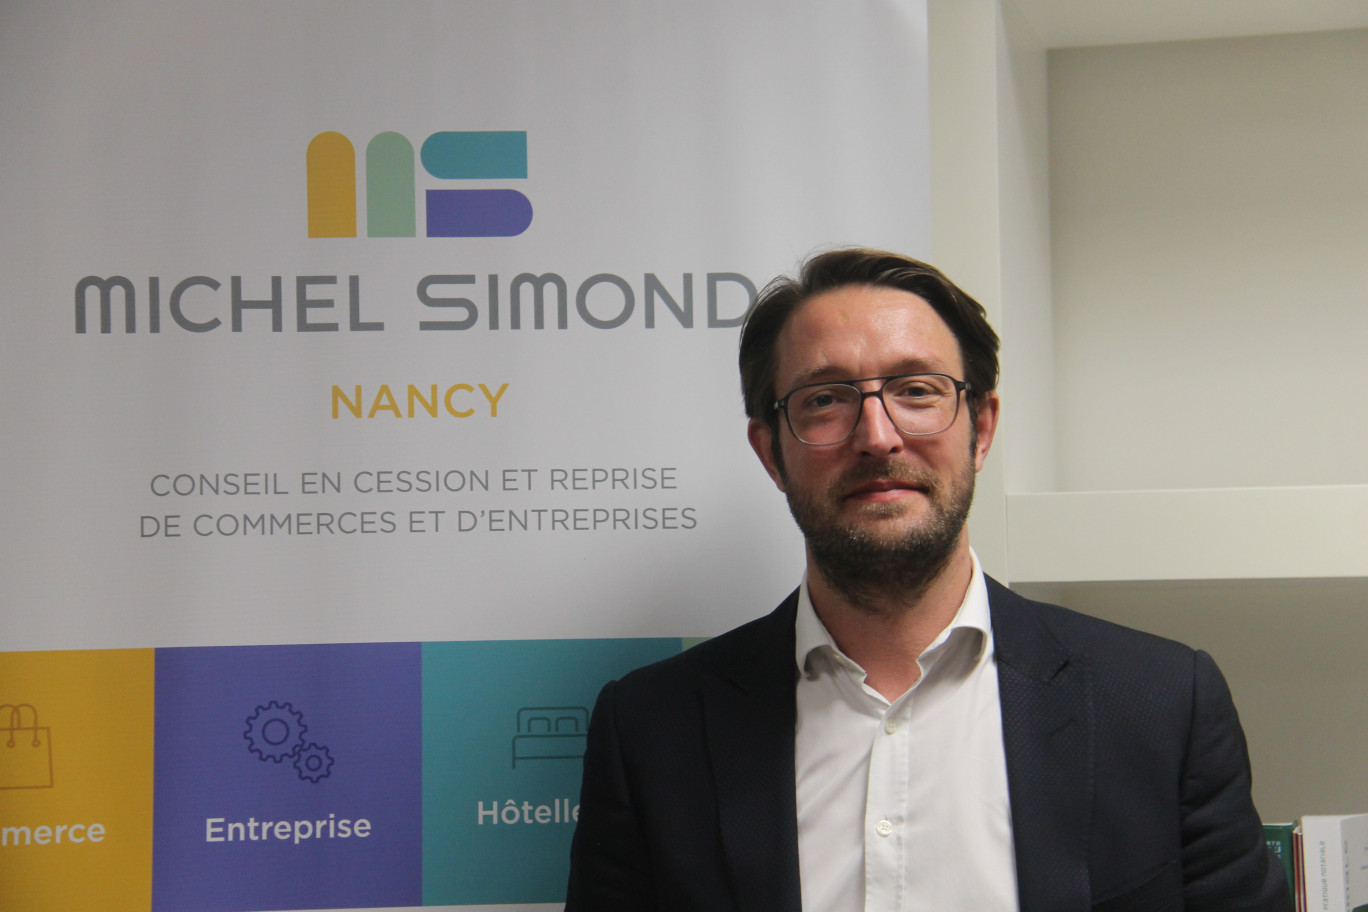 «Le contexte s’affiche comme assez favorable pour notre métier ! Plusieurs offres de reprise sont déjà disponibles», assure Nicolas Giboulet, directeur du cabinet Michel Simond Lorraine.